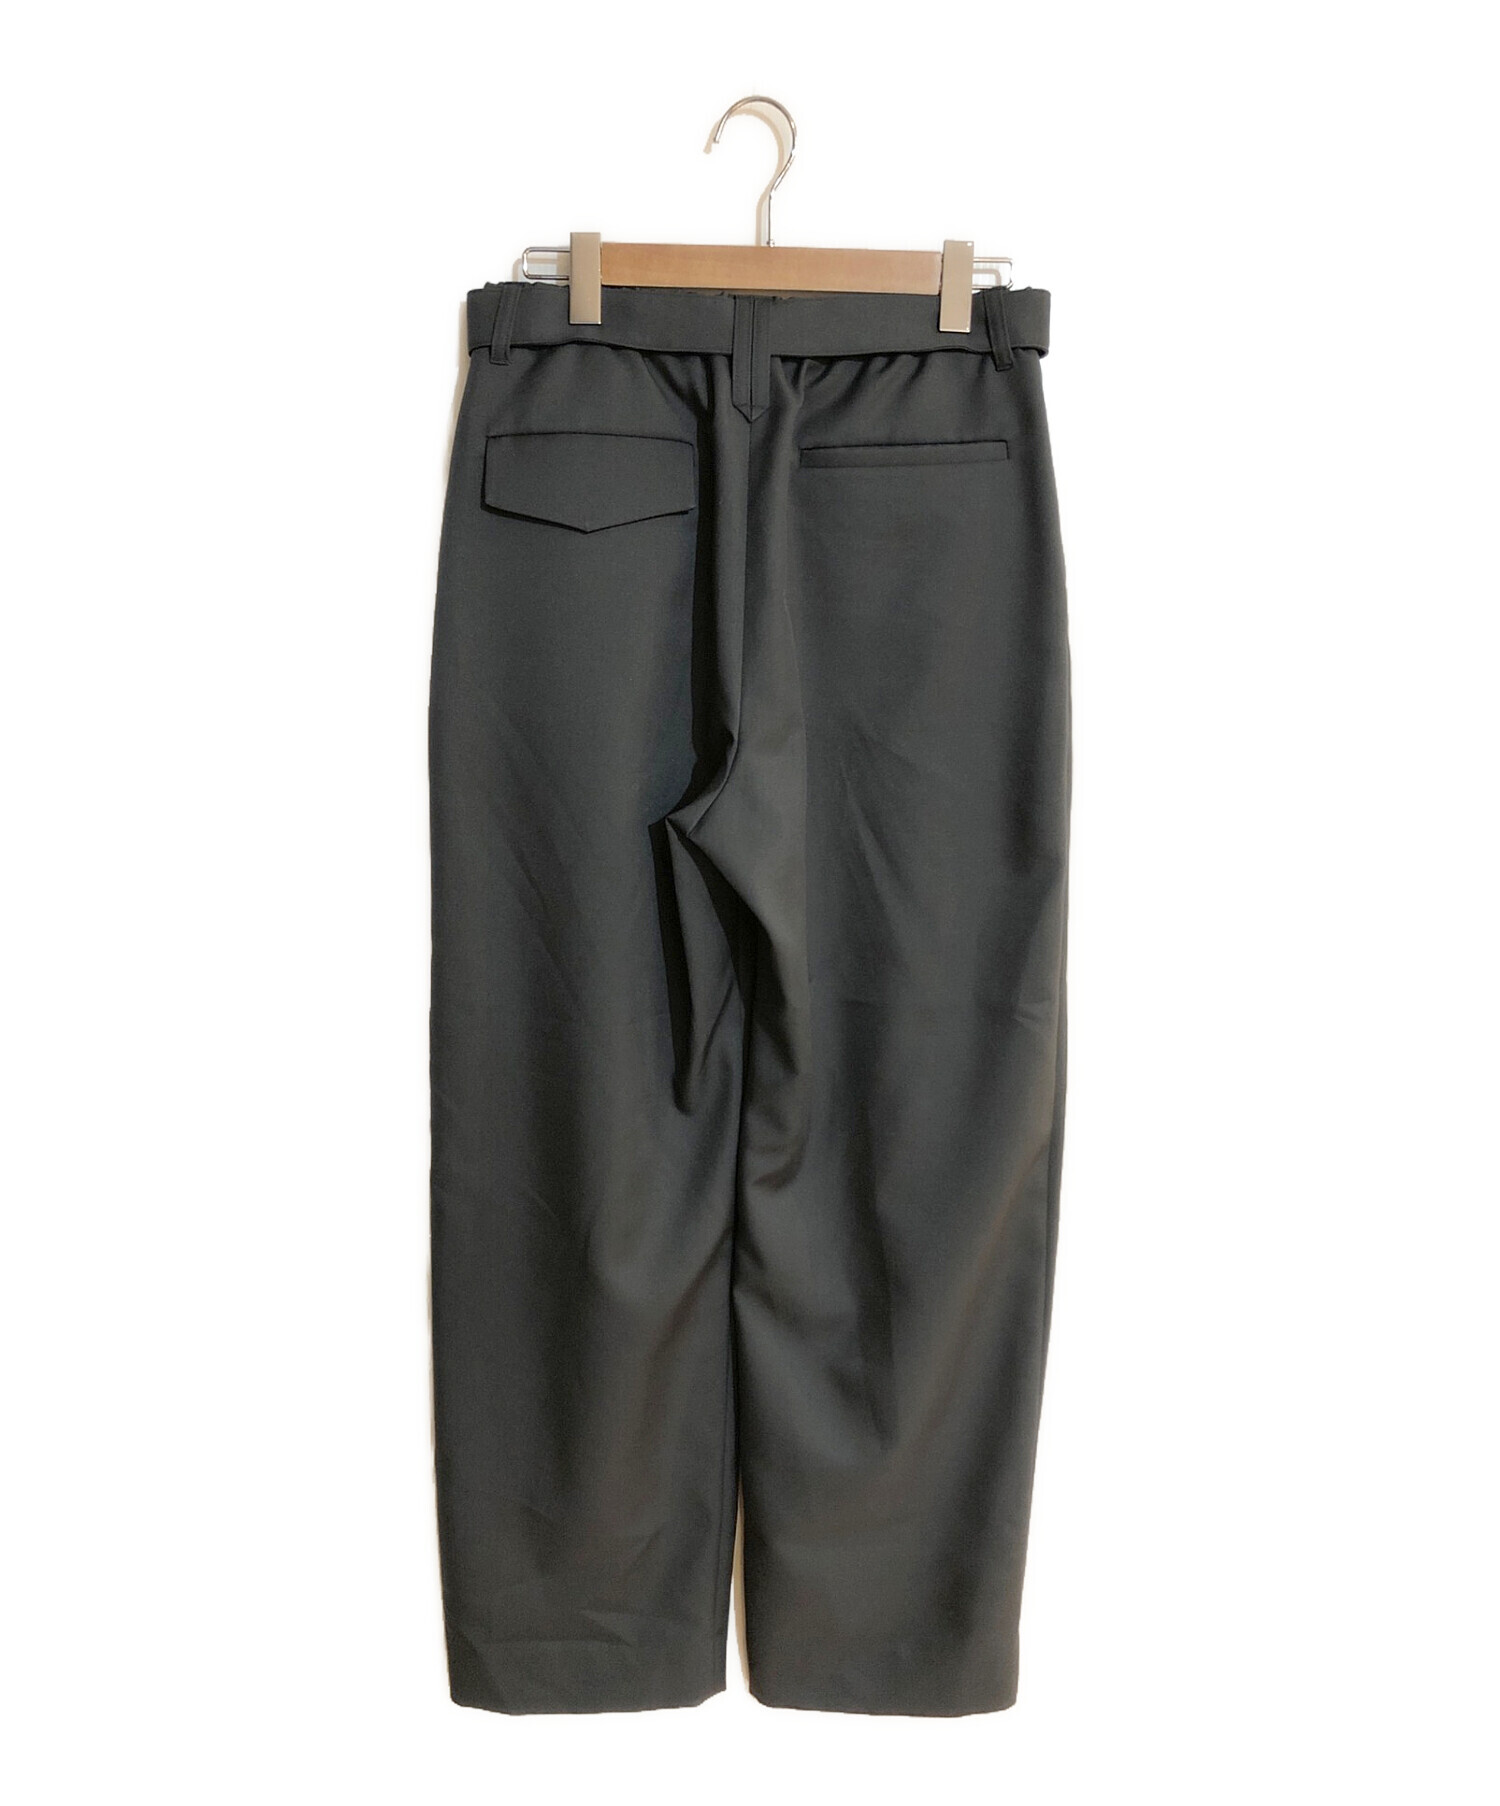 売り割引CULLNI ∬ 2 Tucks Wide Pants With a Belt パンツ